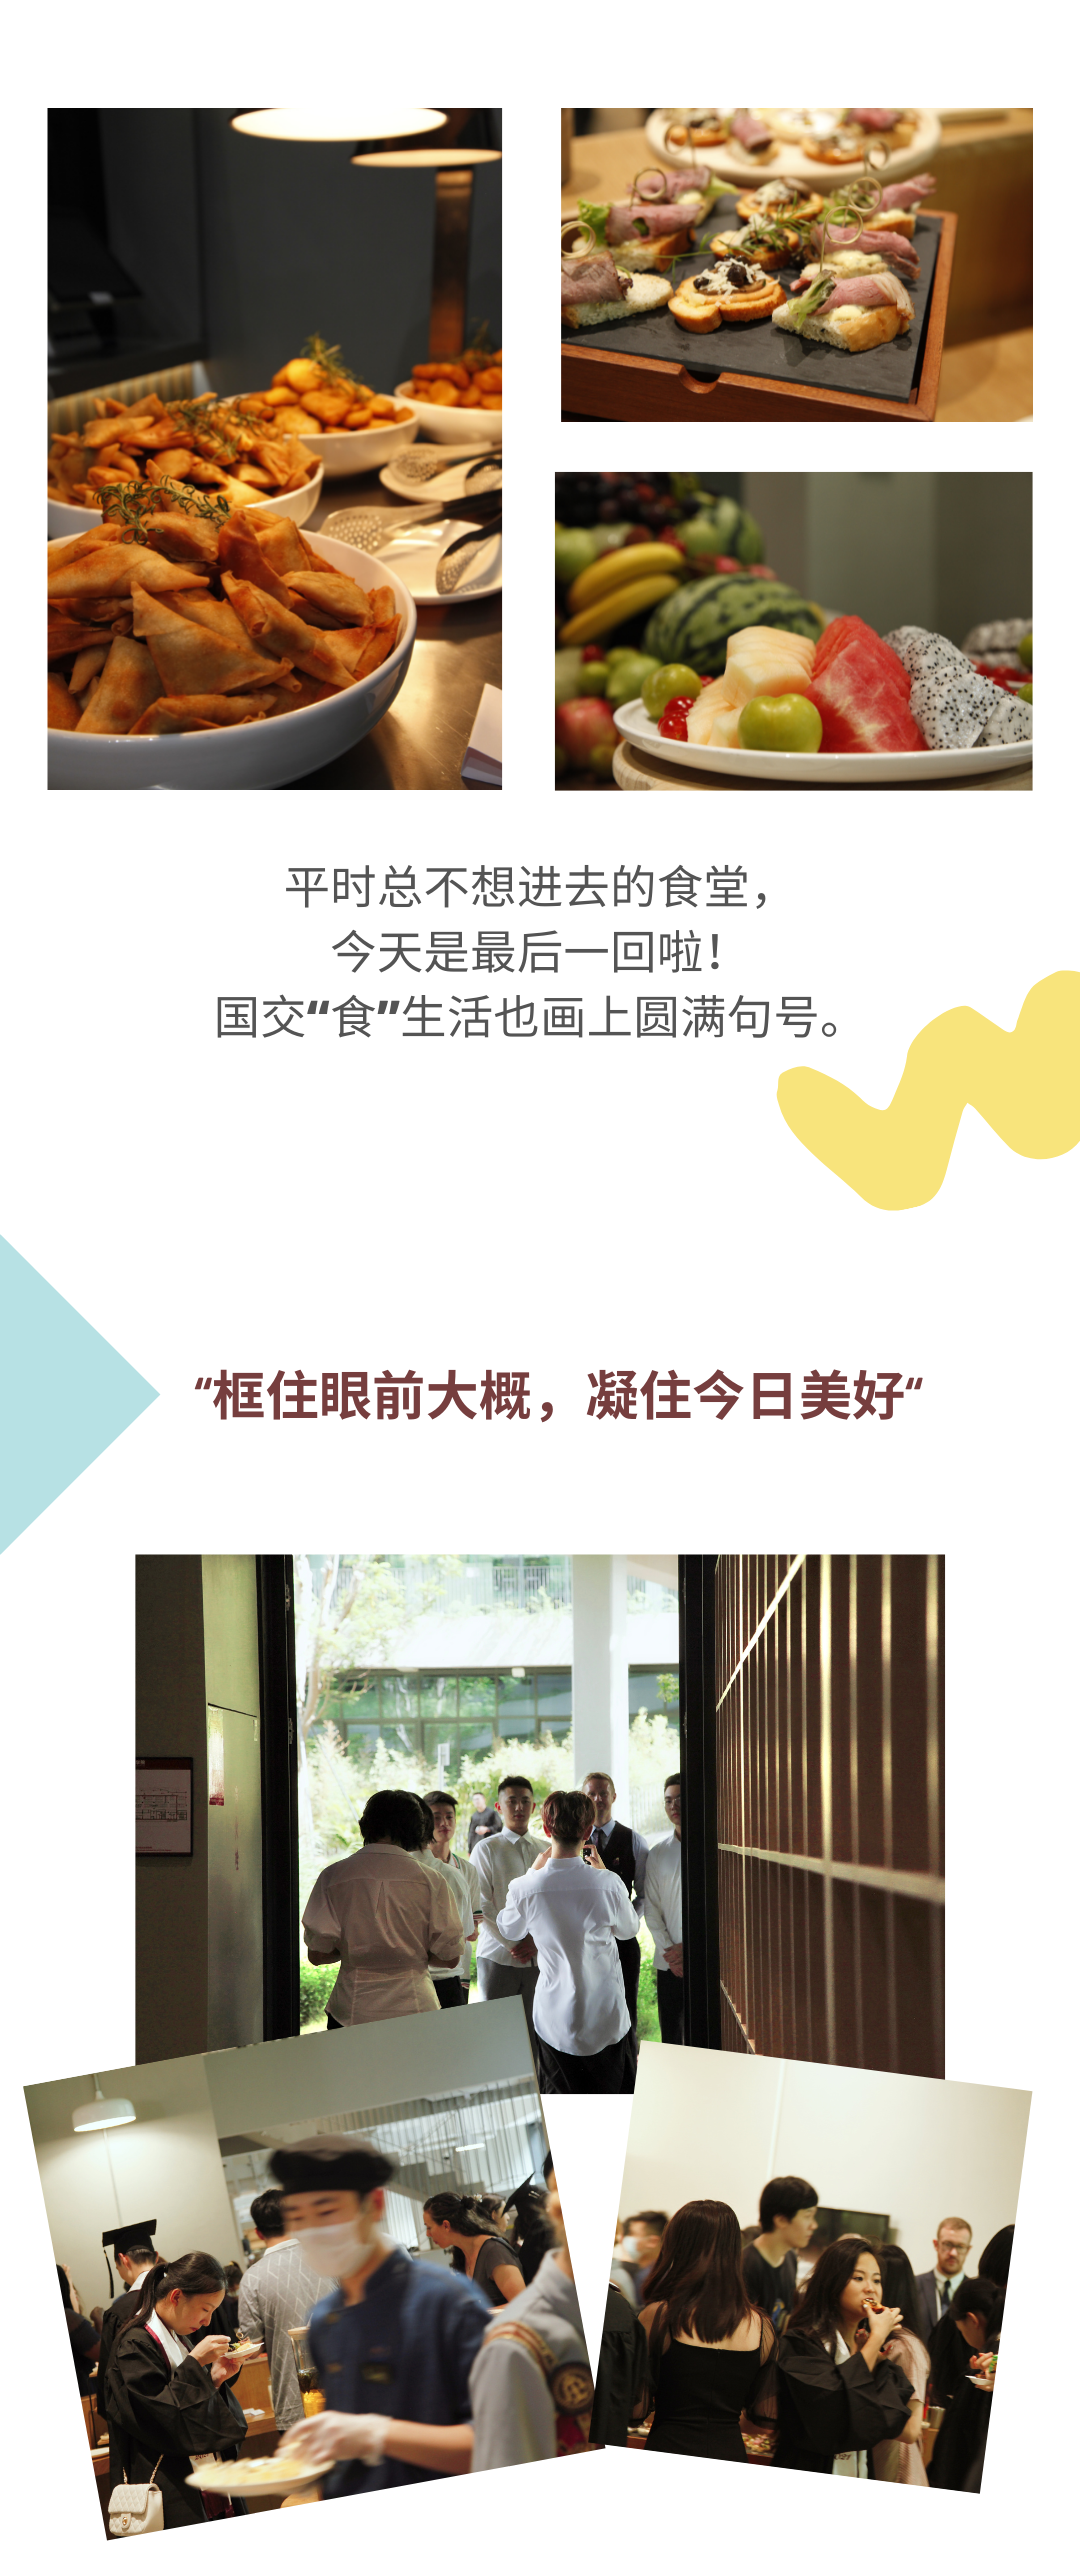 深国交食堂 - “深圳沐知餐饮” 在毕业典礼这一天的真情流露  第5张